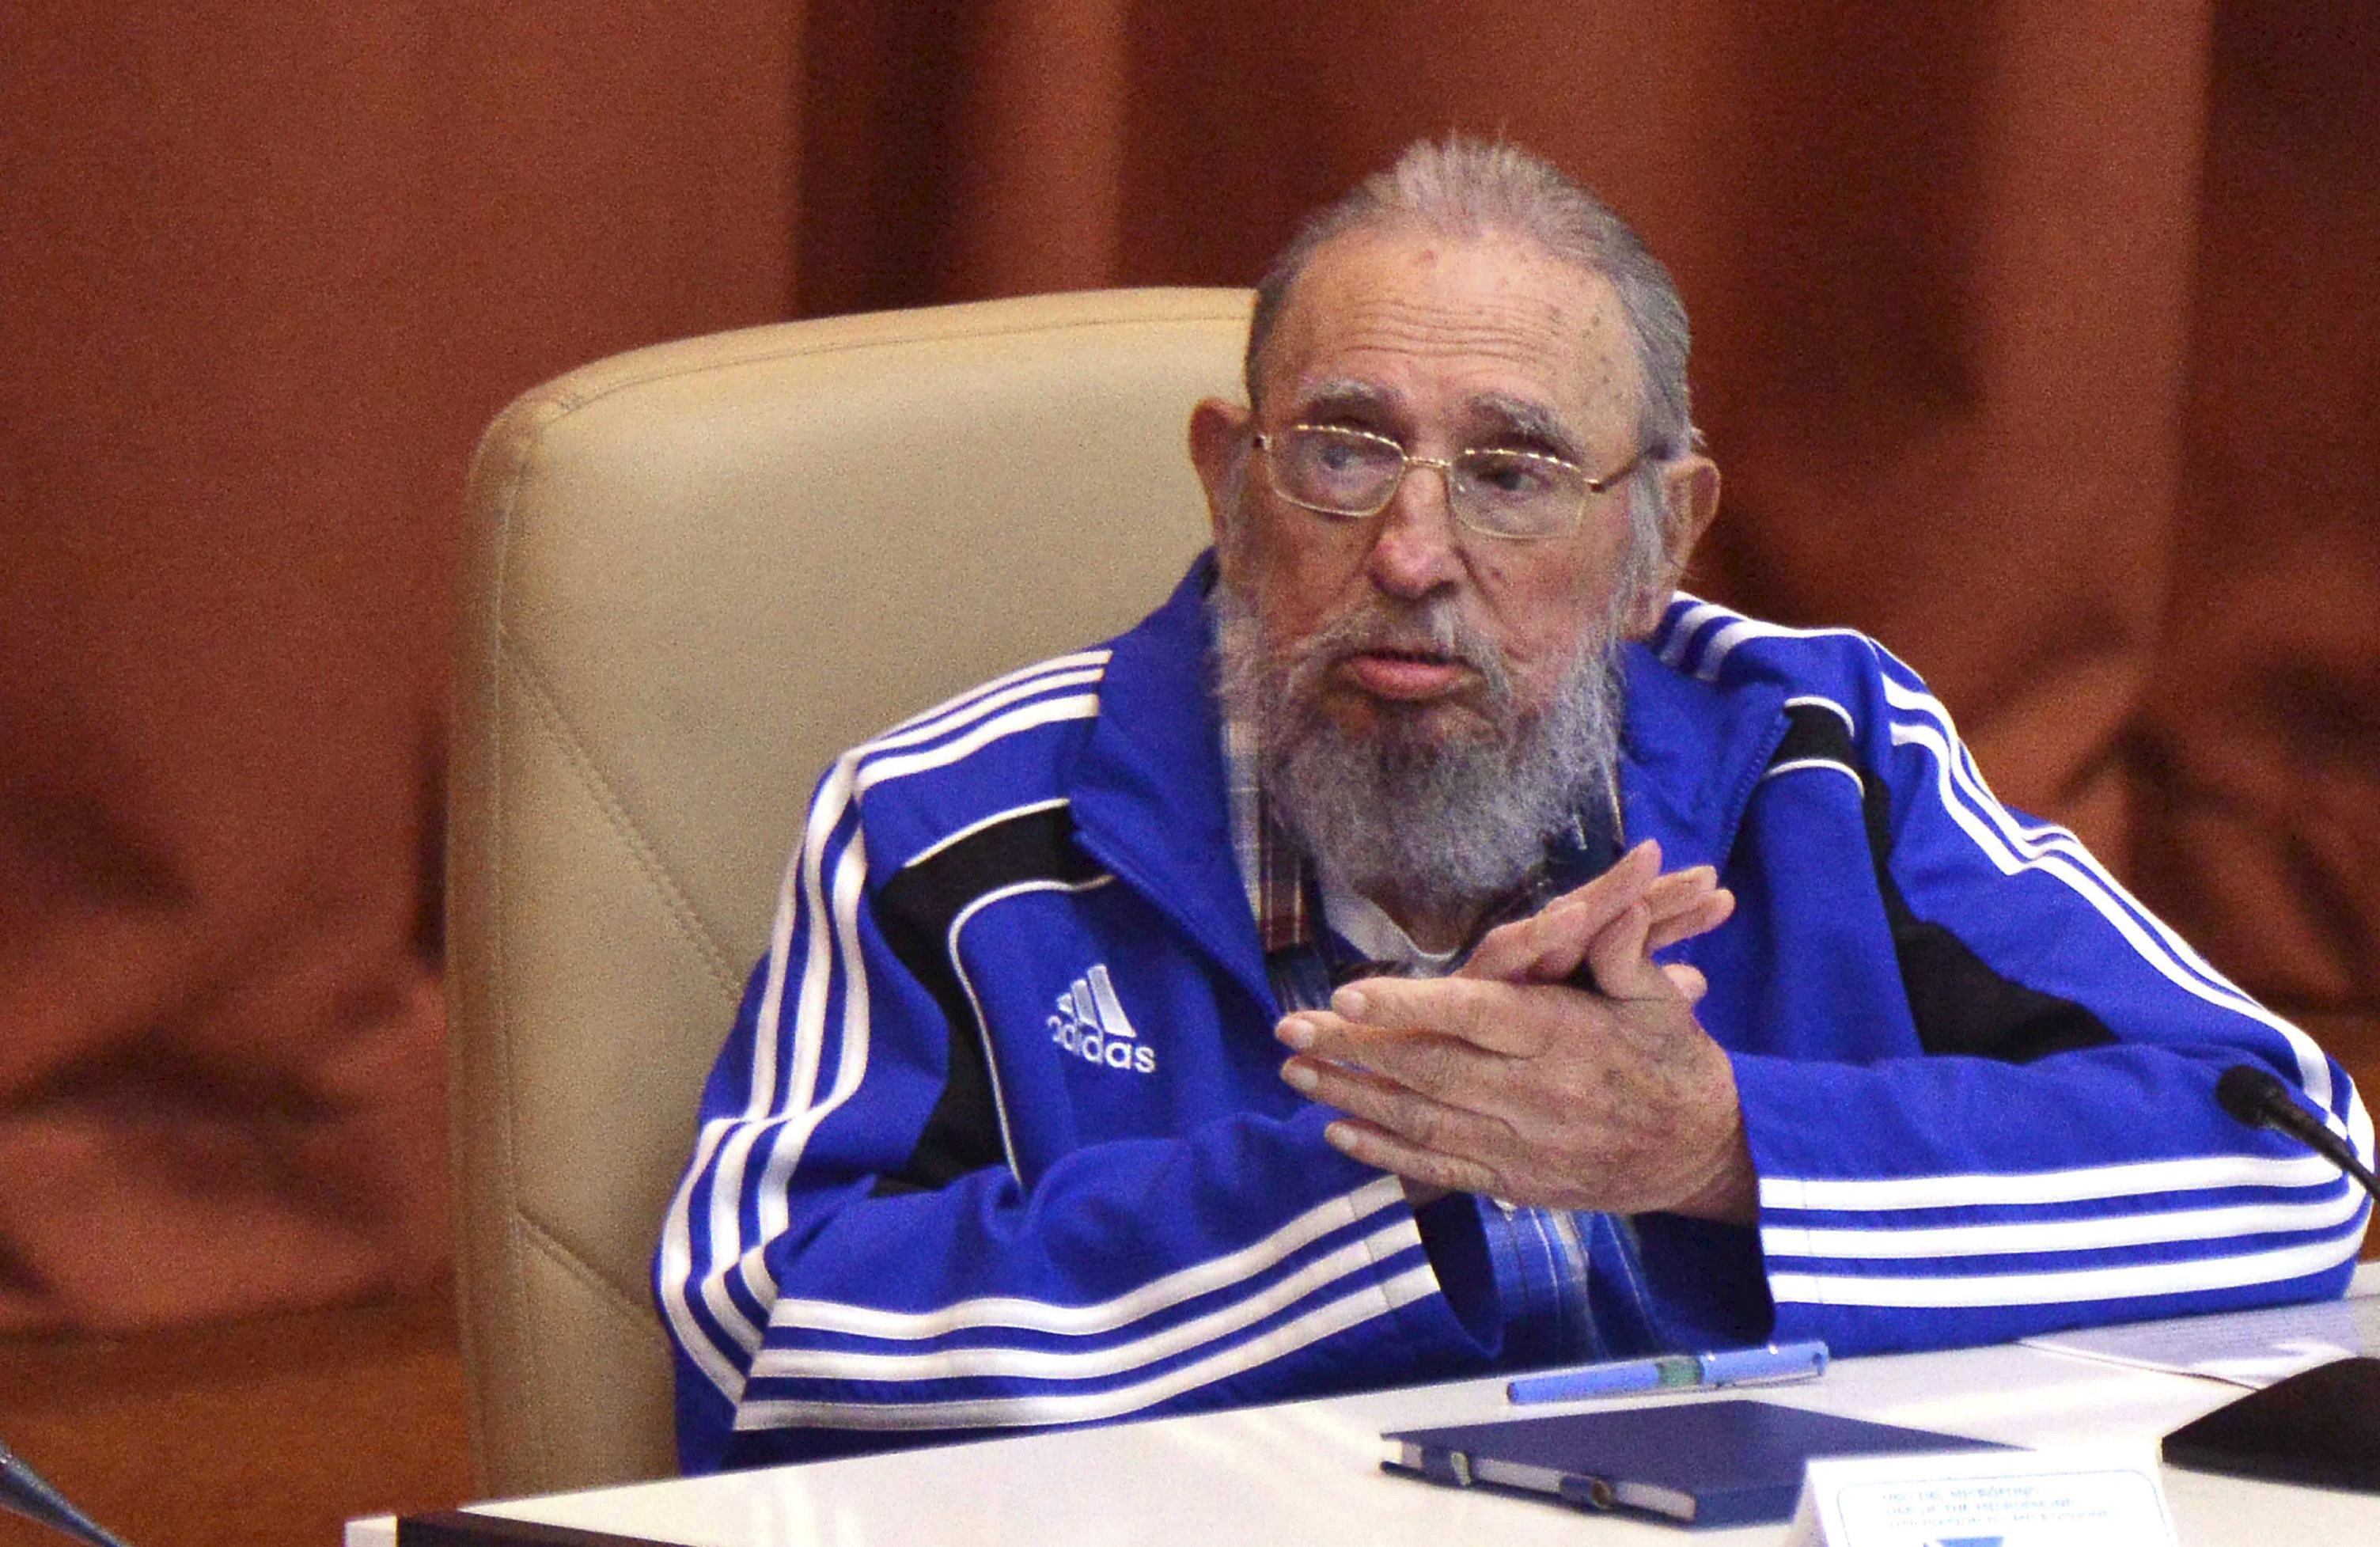 Fidel Castro despierta suspicacias sobre su salud: “A todos nos llegará nuestro turno”